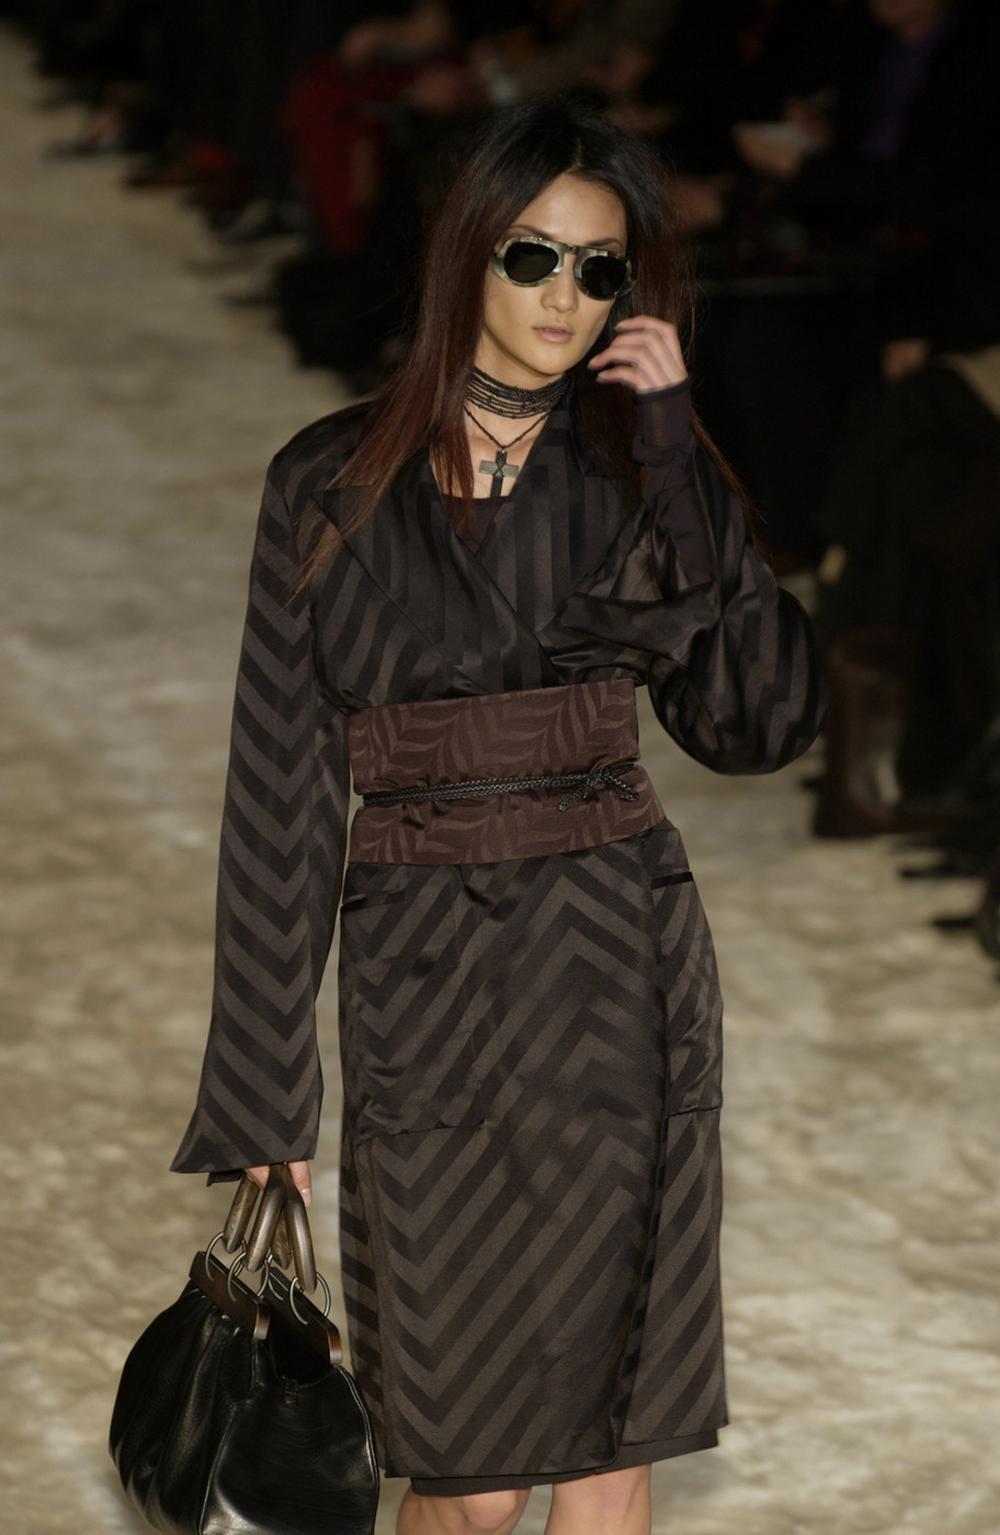 Tom Ford für Gucci Schwarzer Kimono-Mantel aus Seide
F/W 2002 Gothic-Kollektion
IT Größe 40 (andere Größen passen aufgrund des Stils)
Farbe - Schwarz, 100% Seide, Chevron-Muster, zwei tiefe Taschen vorne, zwei Innentaschen, vollständig mit Seide